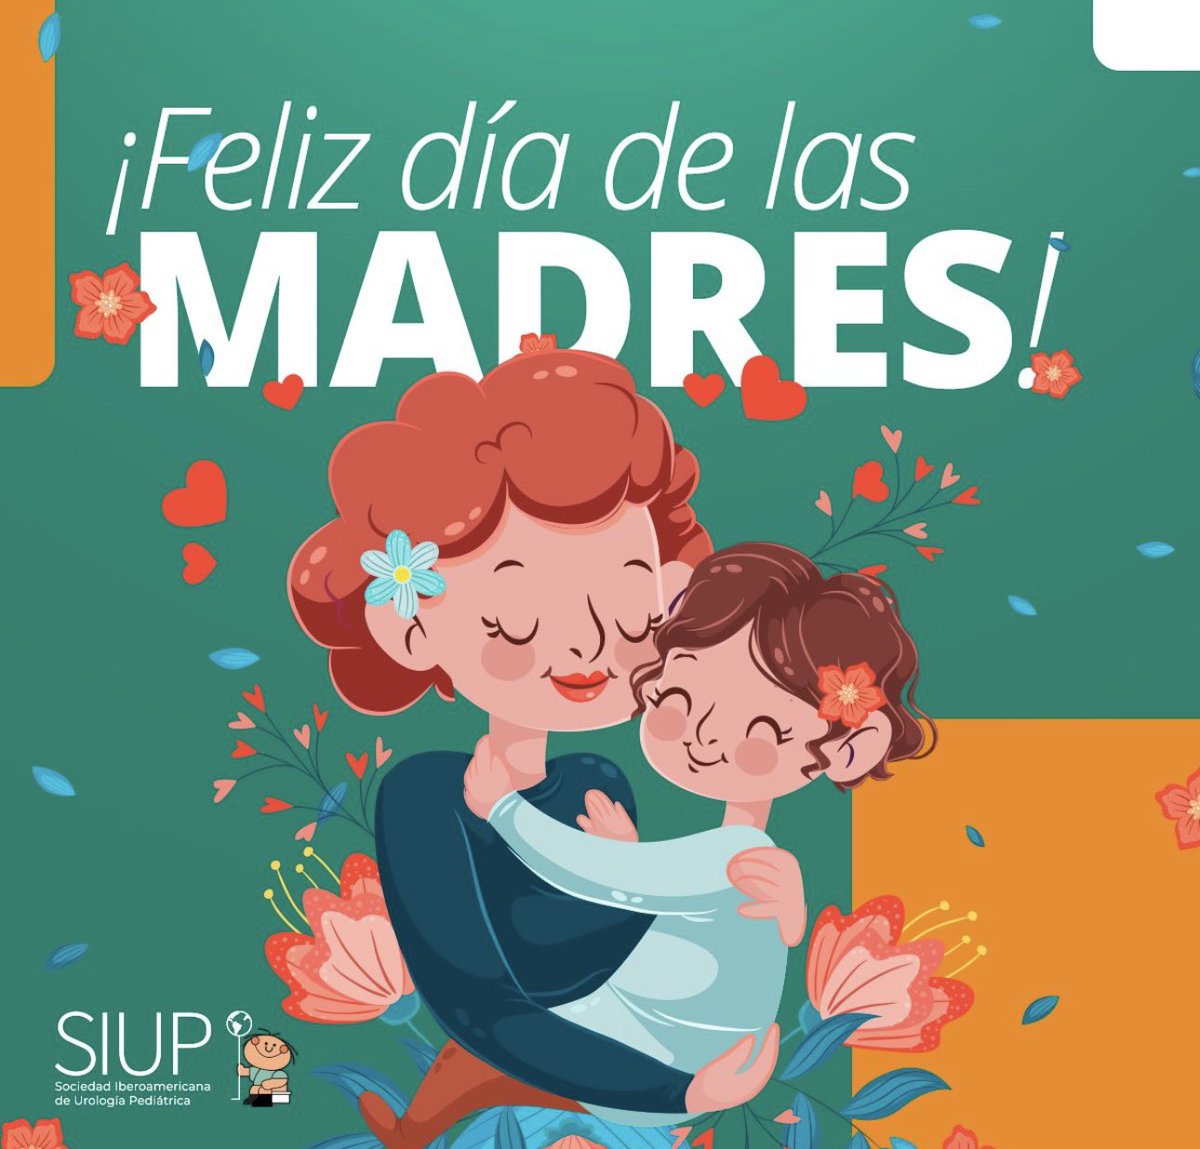 🌹🌼El día de la madre es un ocasión que se festeja en muchos países en el mes de Mayo. 🇨🇦 🇺🇸🇭🇳🇲🇽🇸🇻🇬🇹 🇳🇮 🇨🇱🇨🇴🇪🇨🇵🇪🇺🇾🇻🇪🇪🇸🇧🇿🇮🇳🇸🇬🇵🇰 🥳Es por eso que #SIUP les agradece a todas las madres🤰🏻 por su explendida labor 👩‍🔬👩🏻‍⚕️👩🏼‍💻🤱🏽y su dedicación inigualable.